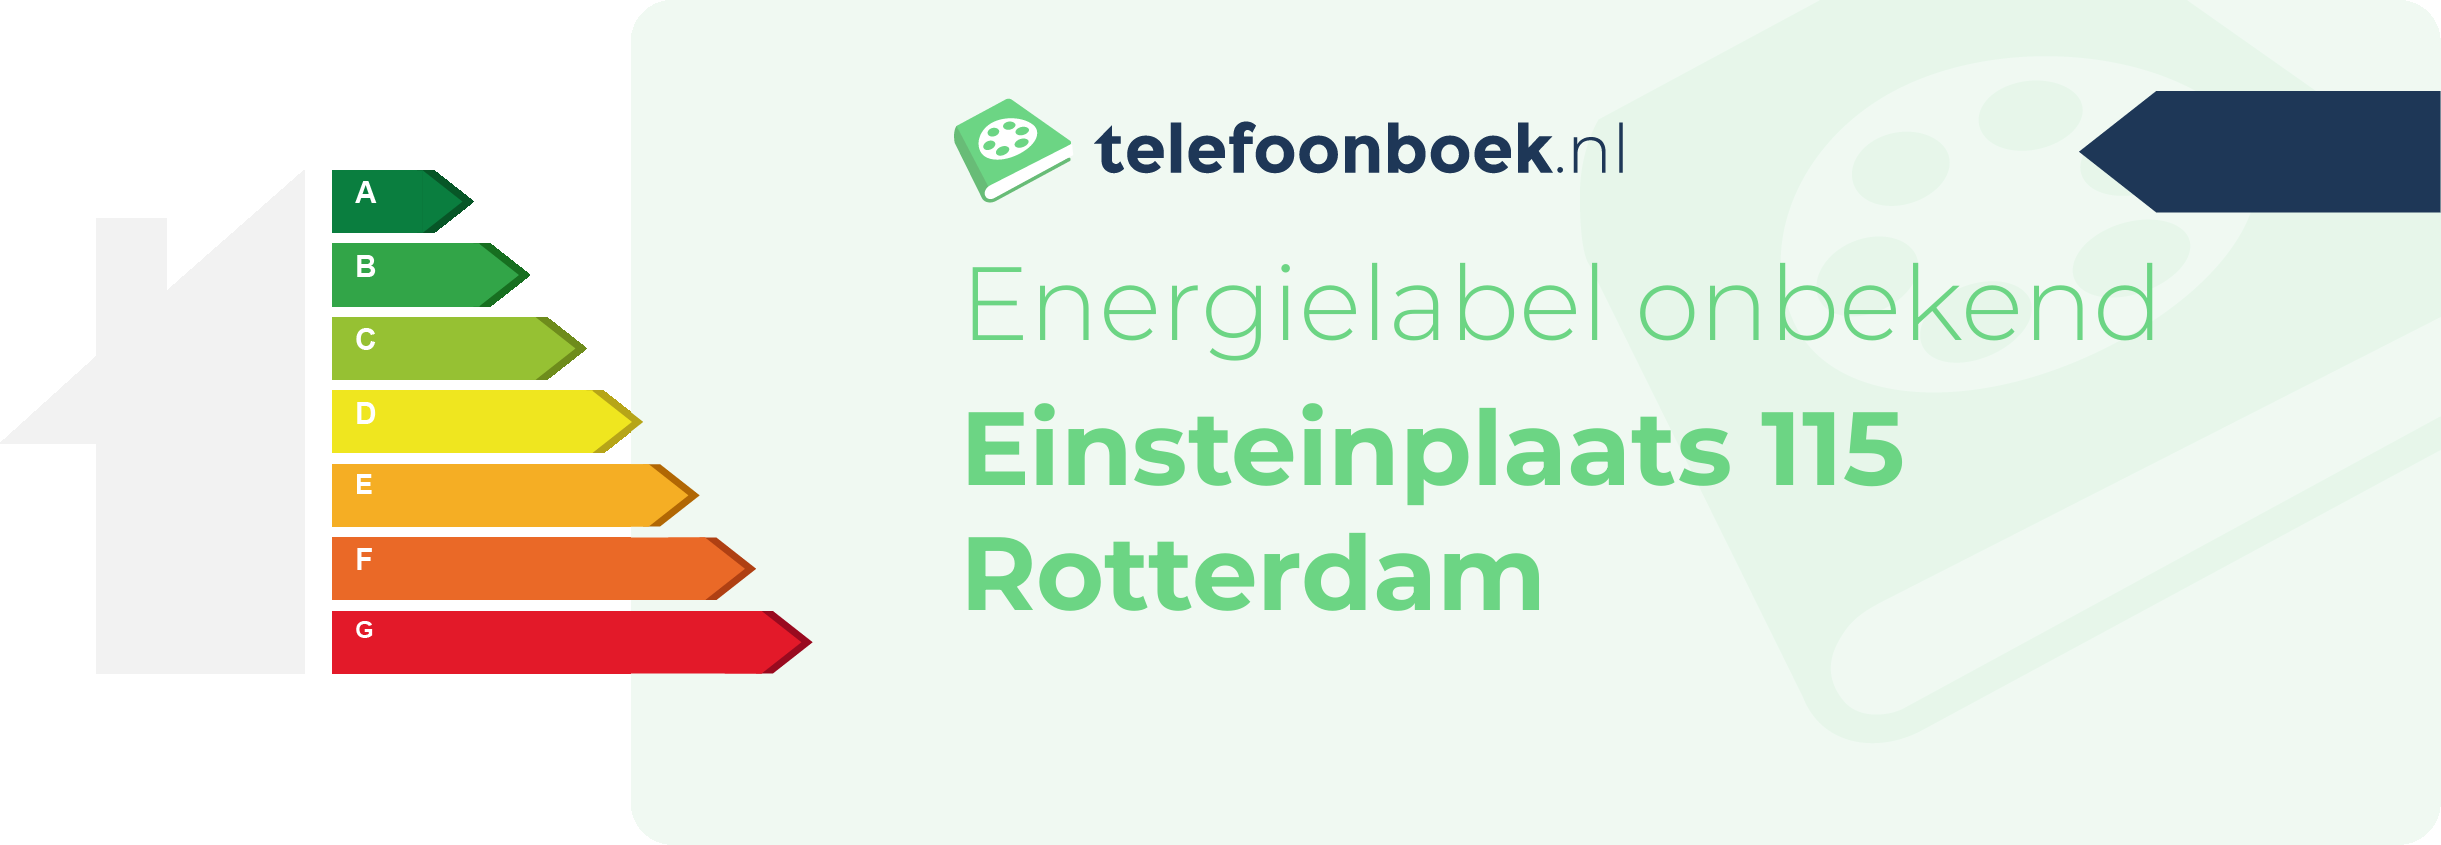 Energielabel Einsteinplaats 115 Rotterdam